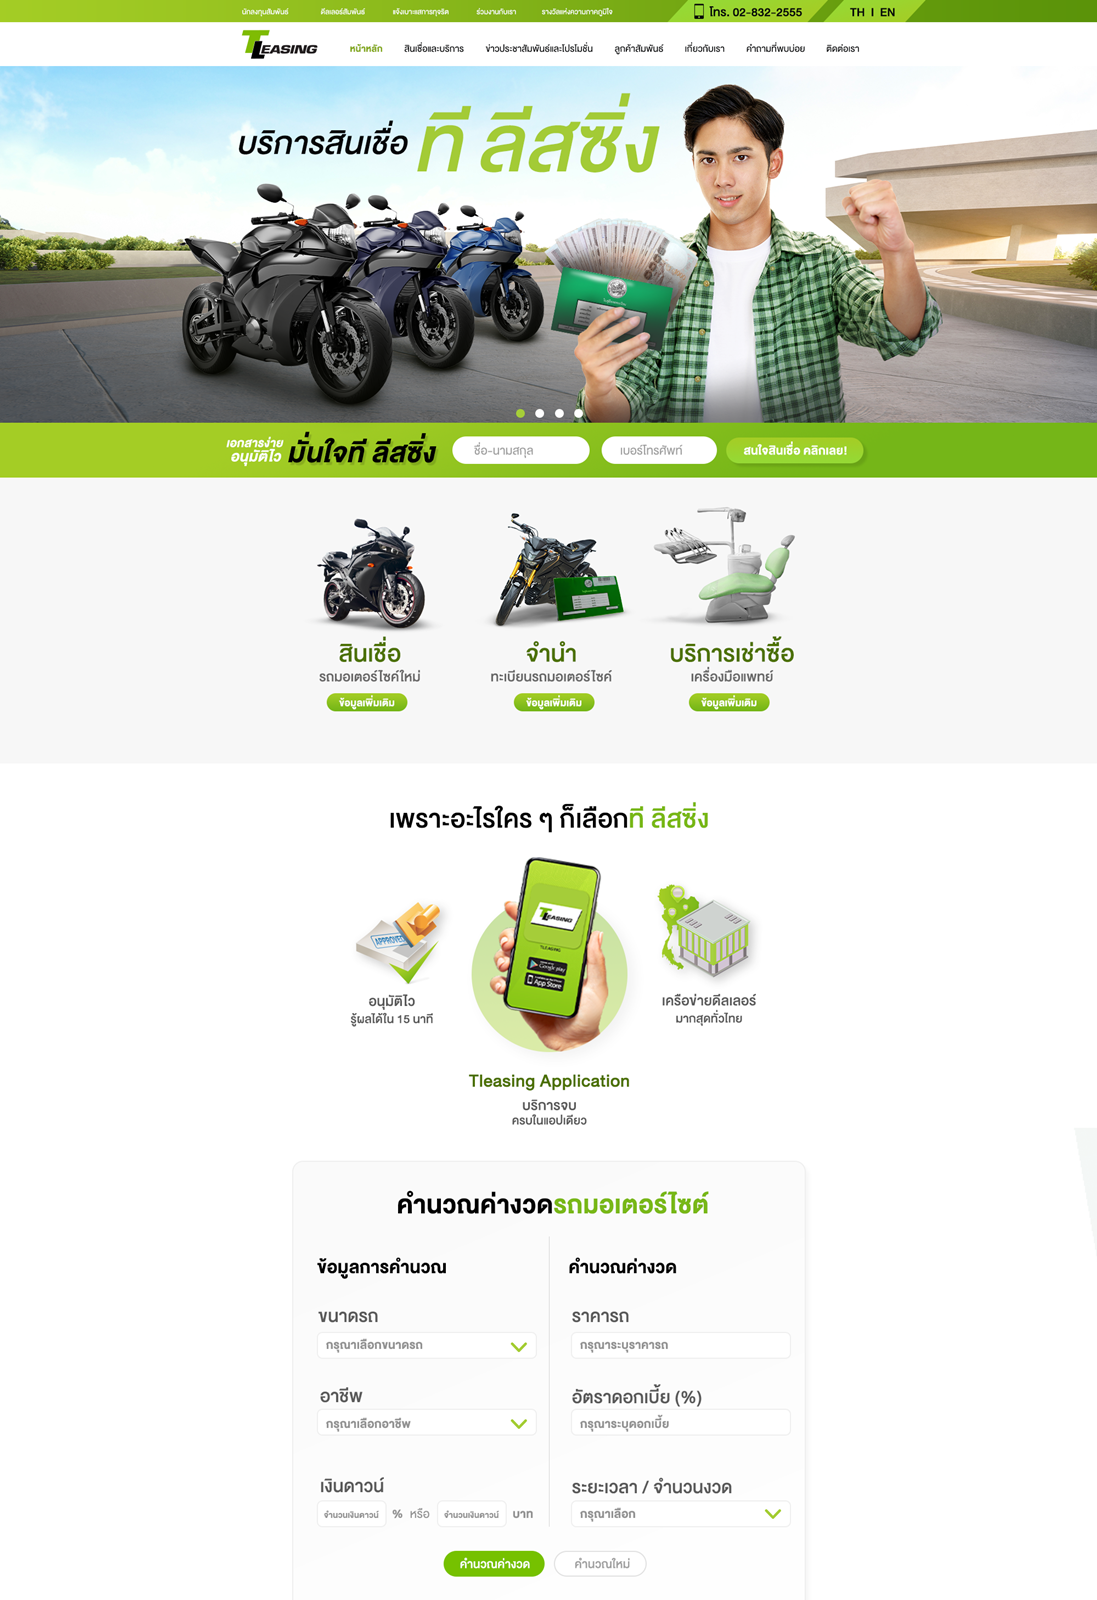 ที ลีสซิ่ง พร้อมให้บริการเว็บไซต์เต็มรูปแบบ ครบทุกเรื่องสินเชื่อเช่าซื้อรถจักรยานยนต์